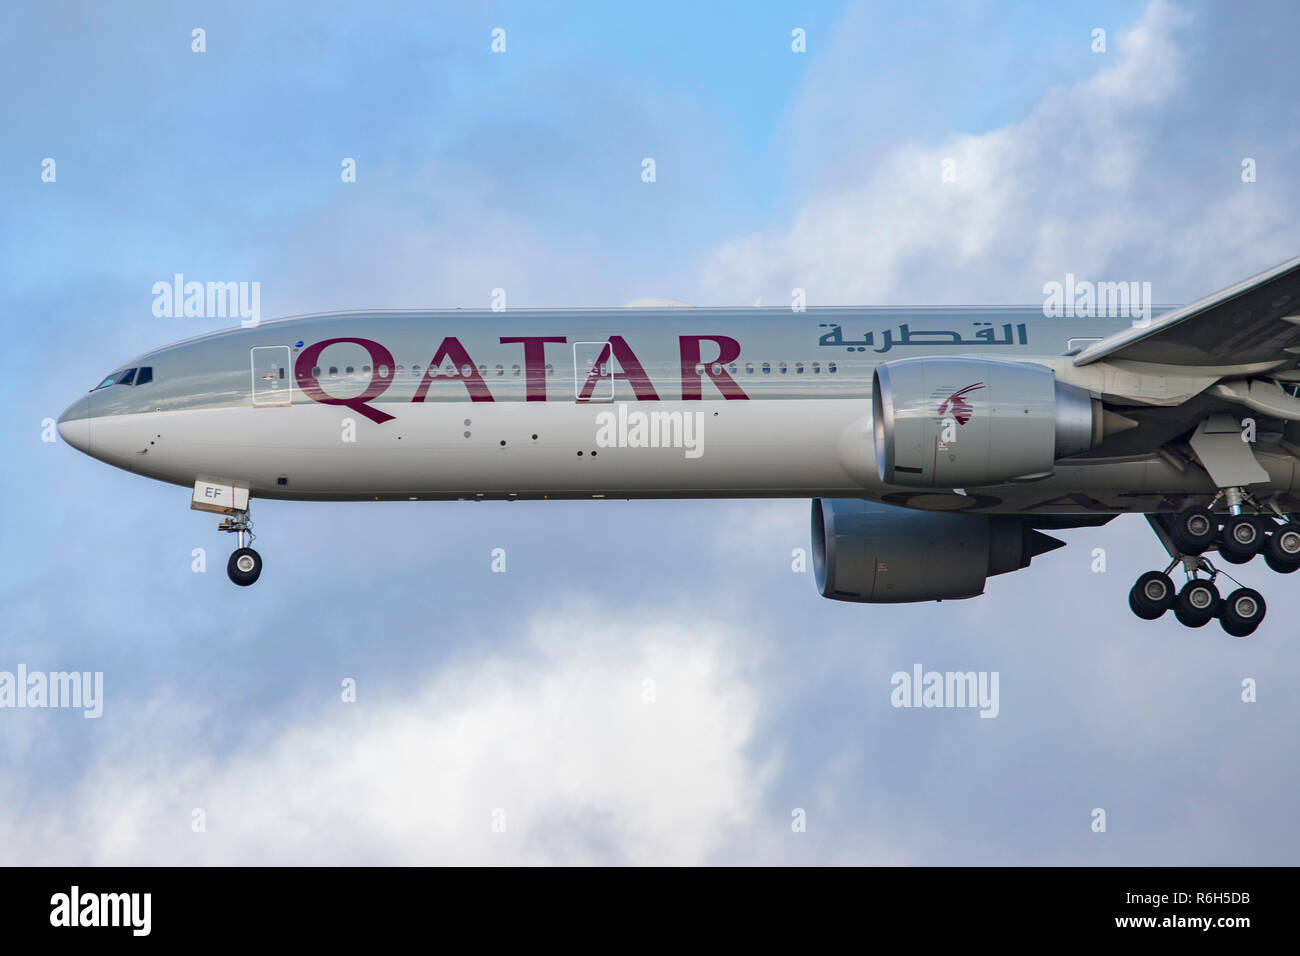 Qatar Airways Boeing 777-300 visto lo sbarco a Londra Heathrow International Airport LHR / EGLL a Londra. Il velivolo è specificamente un Boeing 777-3DZ(ER) con la registrazione A7-baf, dotato di due delle più grandi motori a getto, GE90. Qatar Airways collega Londra con Doha su una base quotidiana. Foto Stock